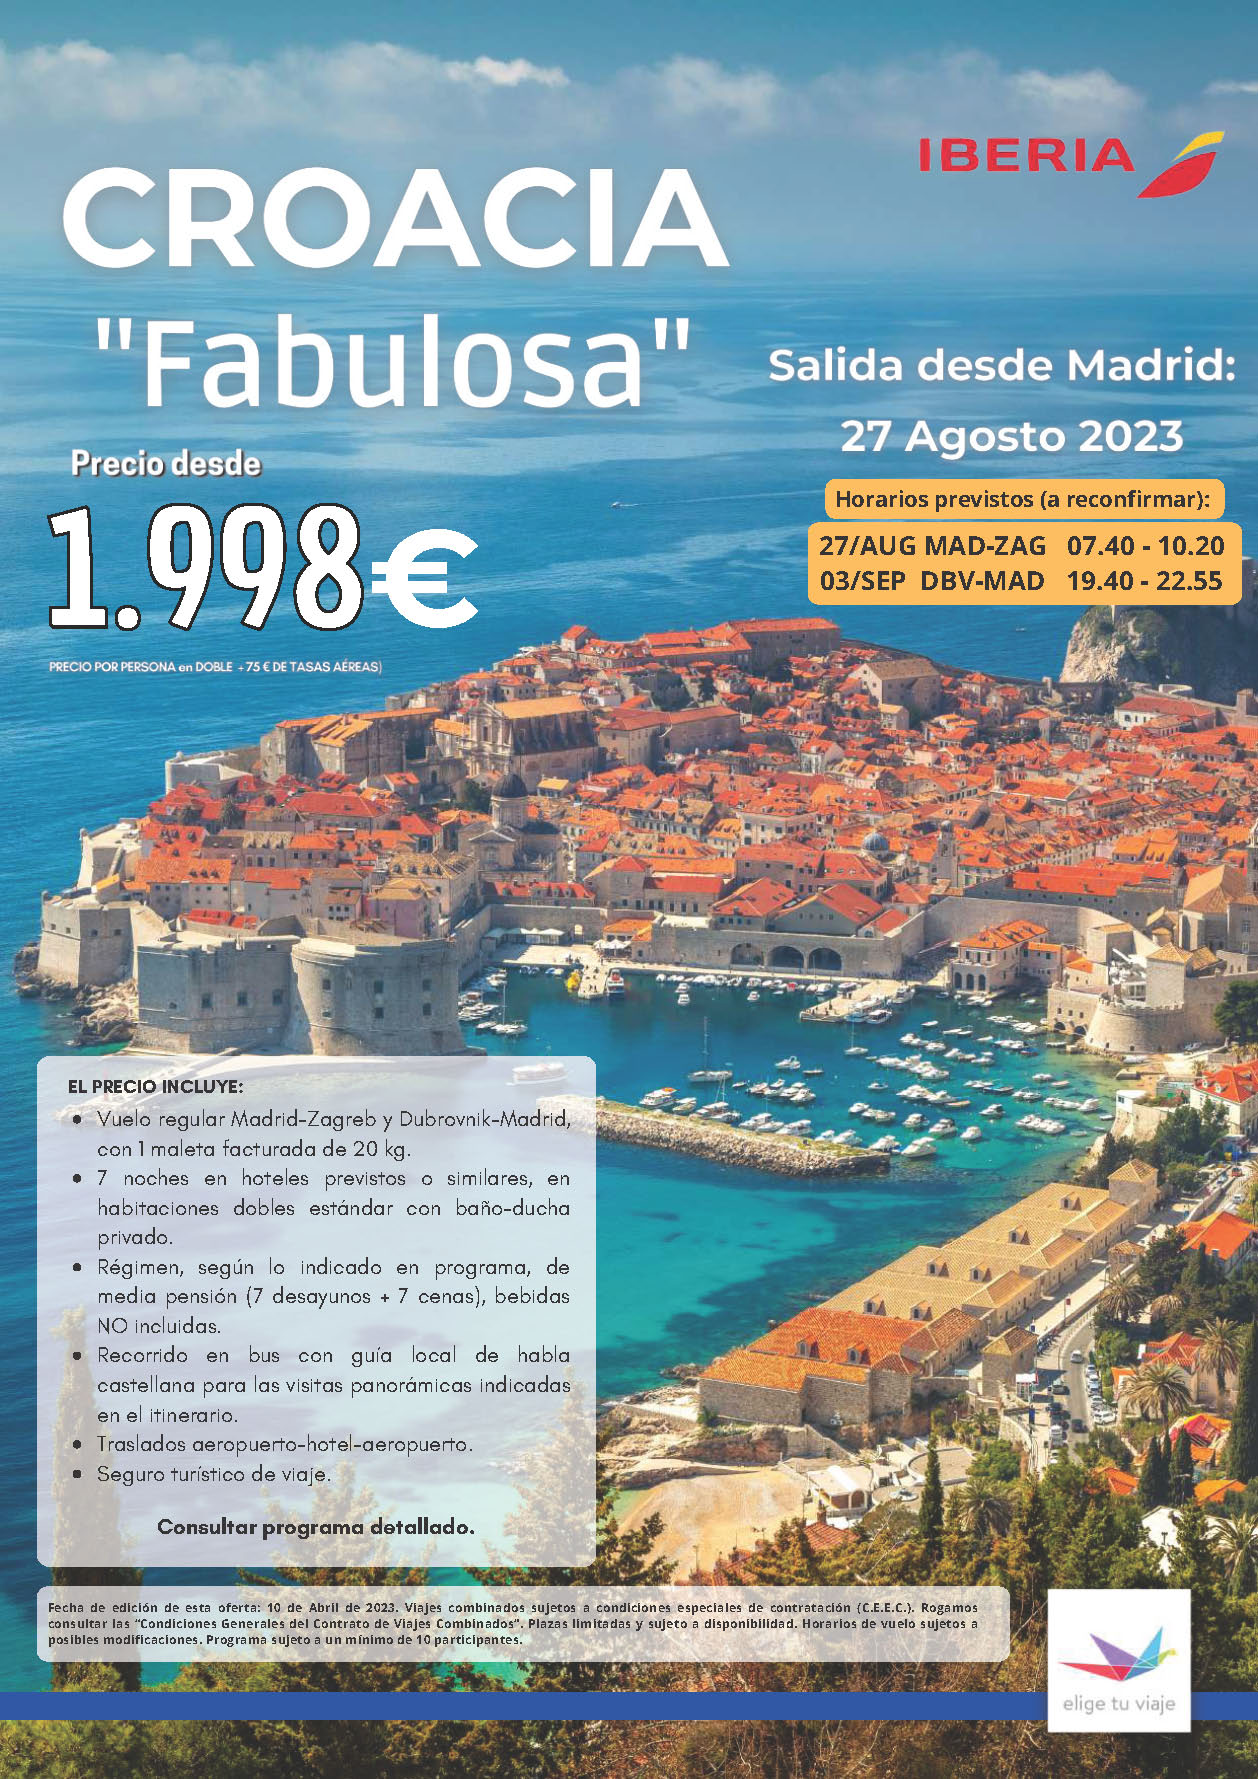 Oferta Elige tu Viaje 27 Agosto 2023 circuito Croacia Fabulosa 8 dias salida en vuelo directo desde Madrid vuelos Iberia